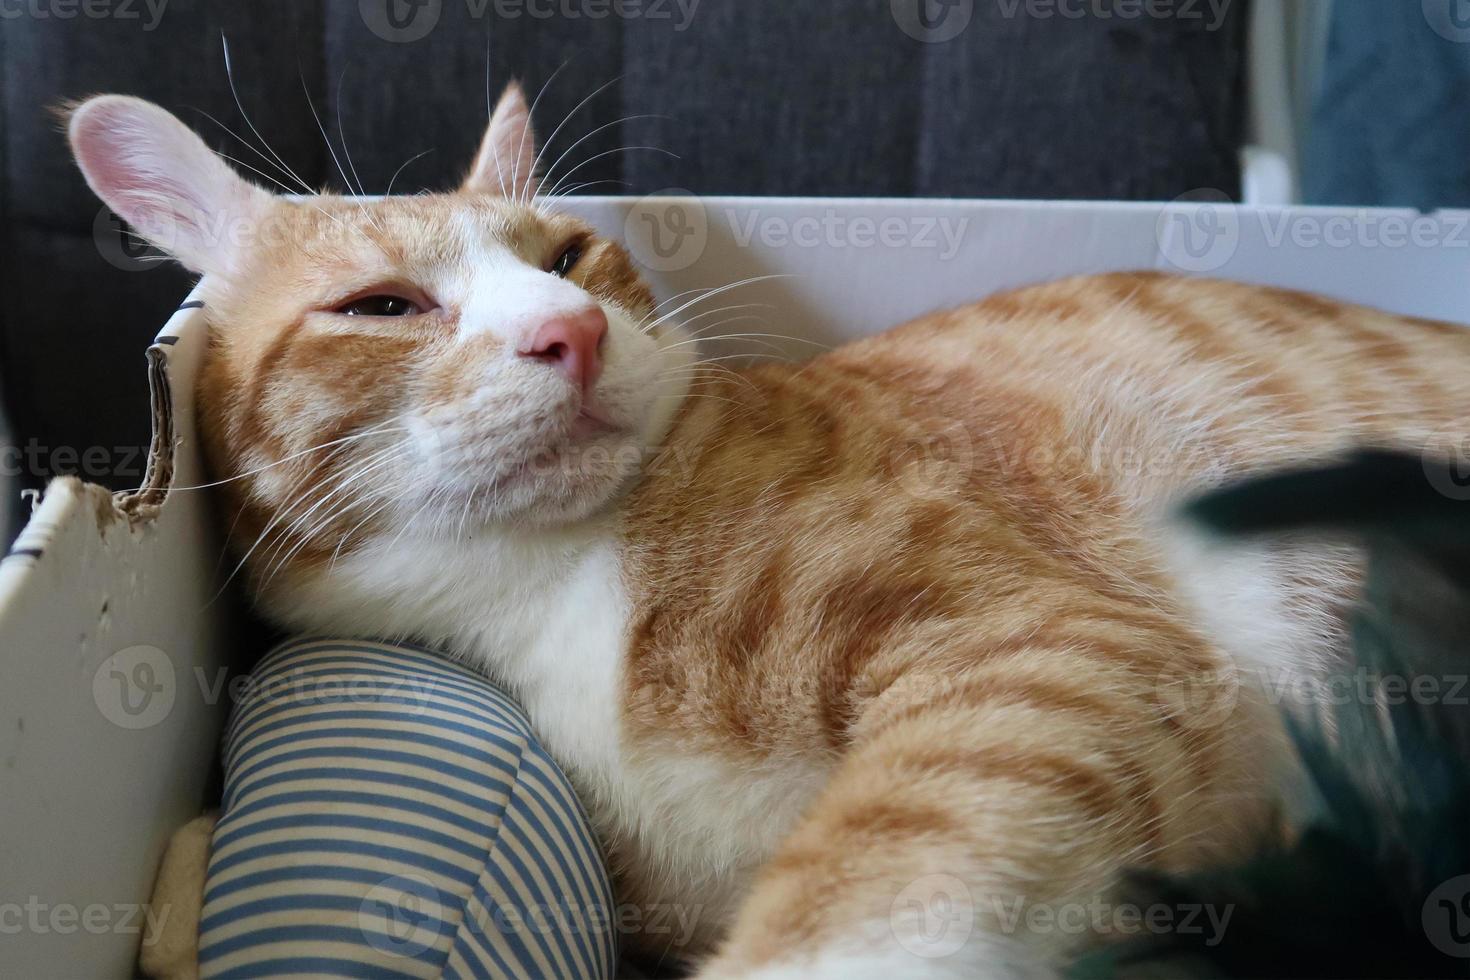 gato malhado laranja encontra-se na caixa. animal de estimação fofo vai dormir lá. foto